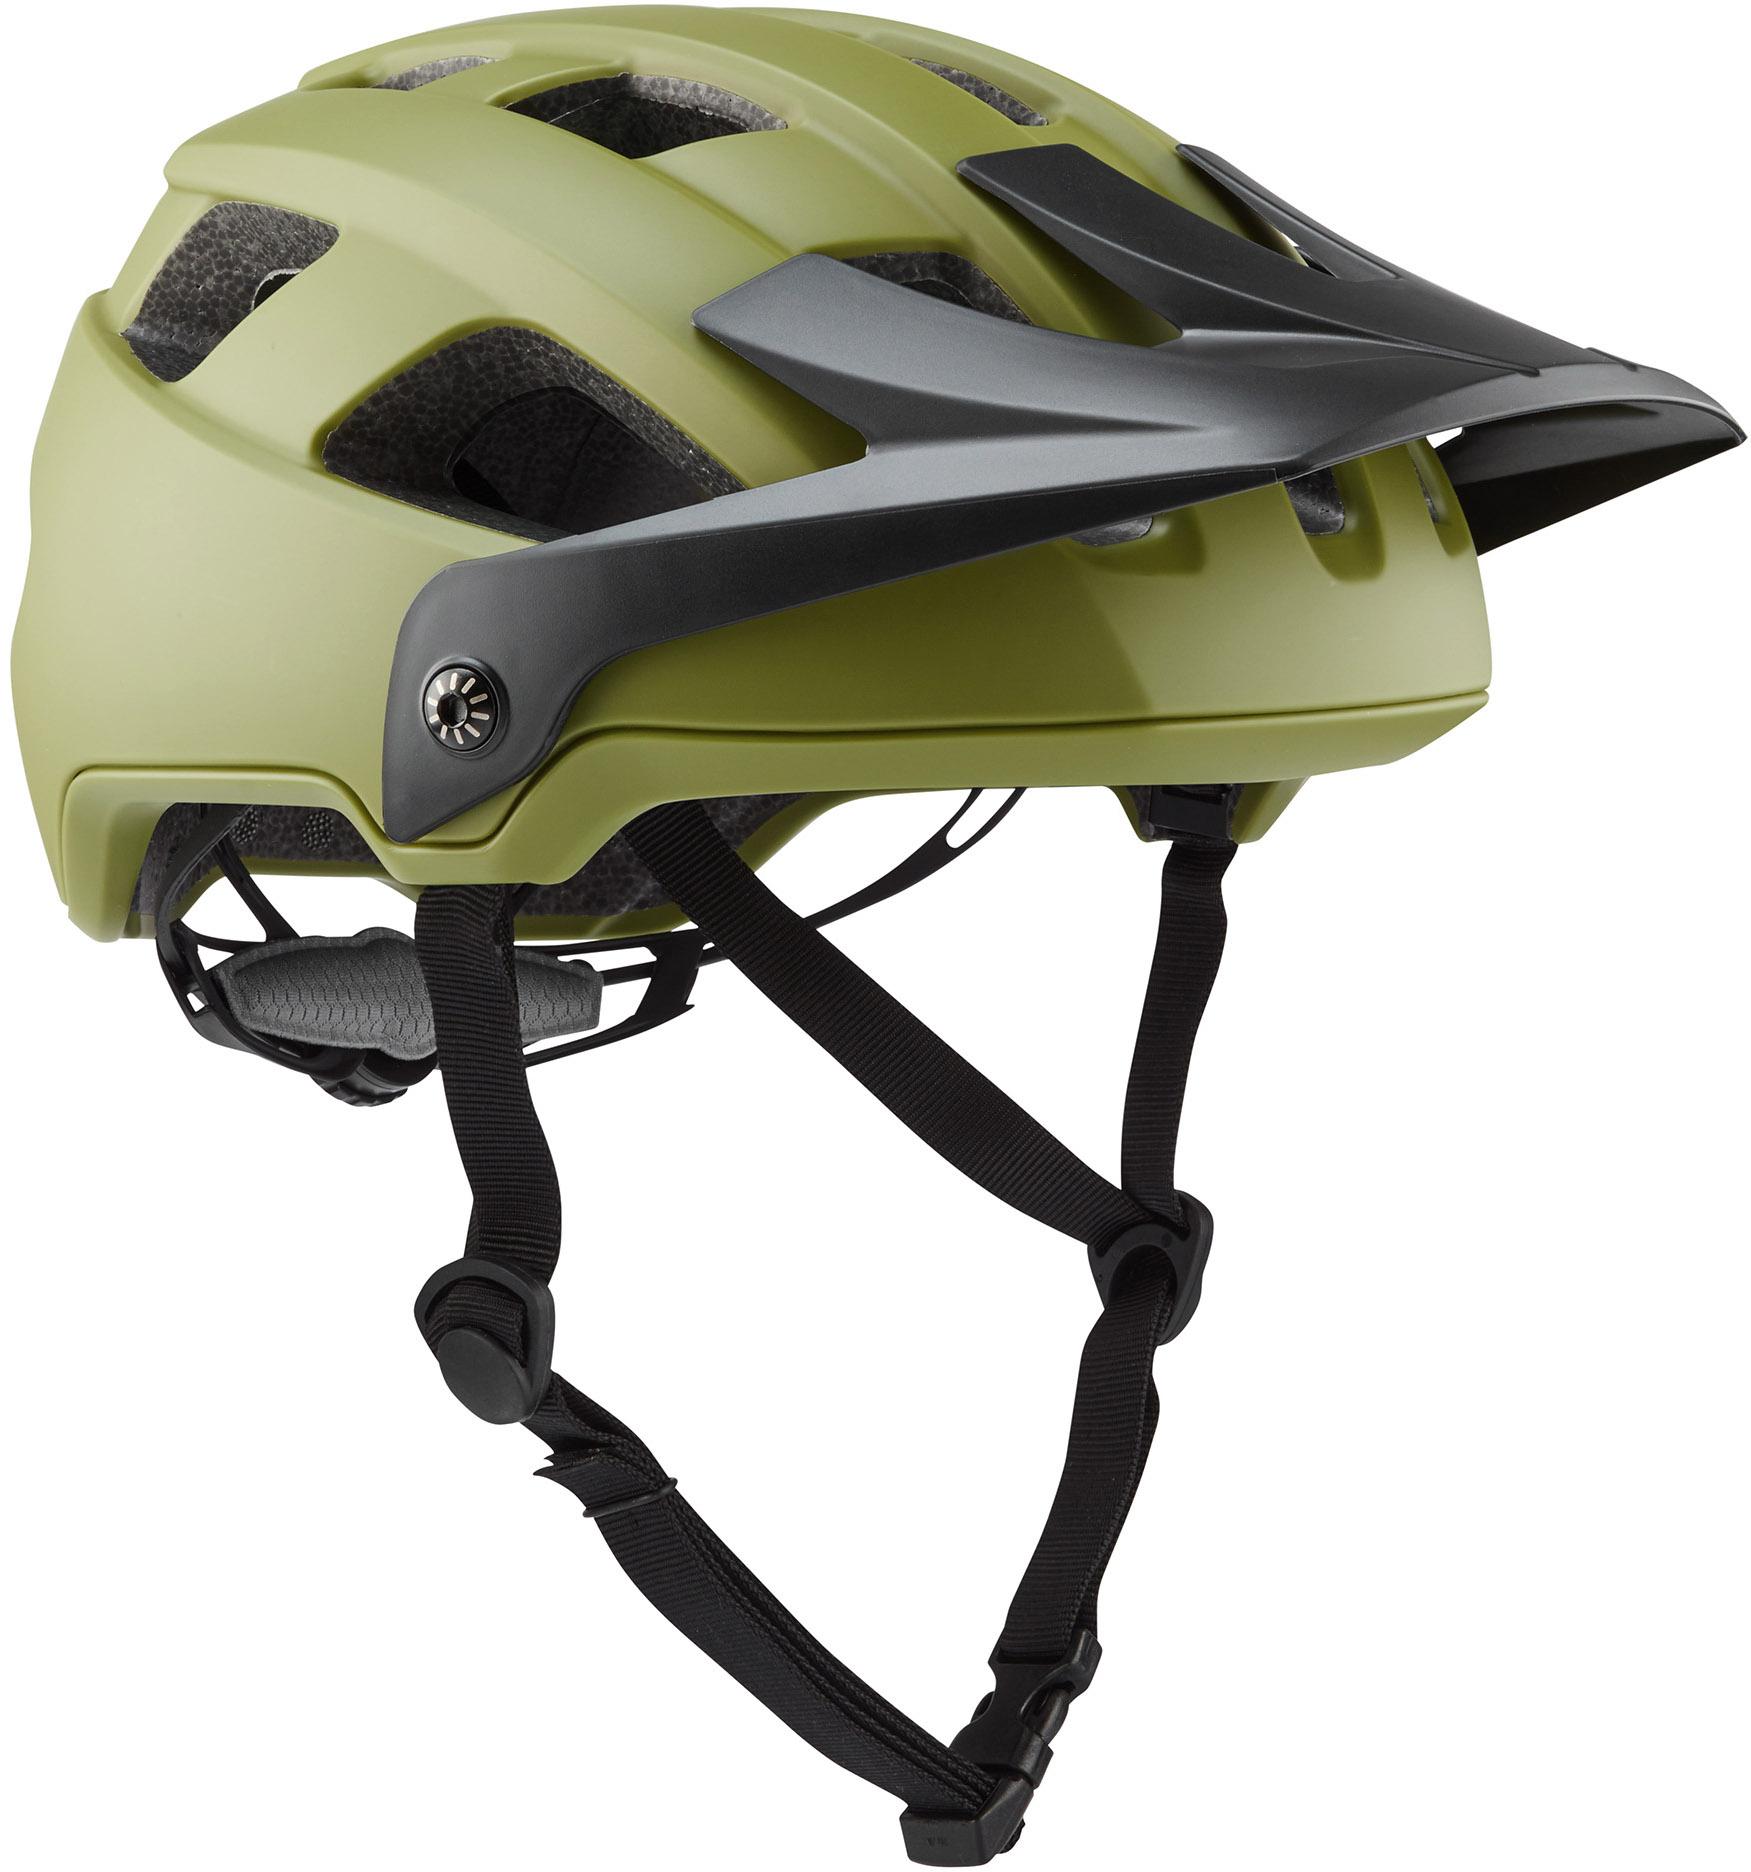 Brand-x Eh1 Enduro Mtb Cycling Helmet  Moss Green